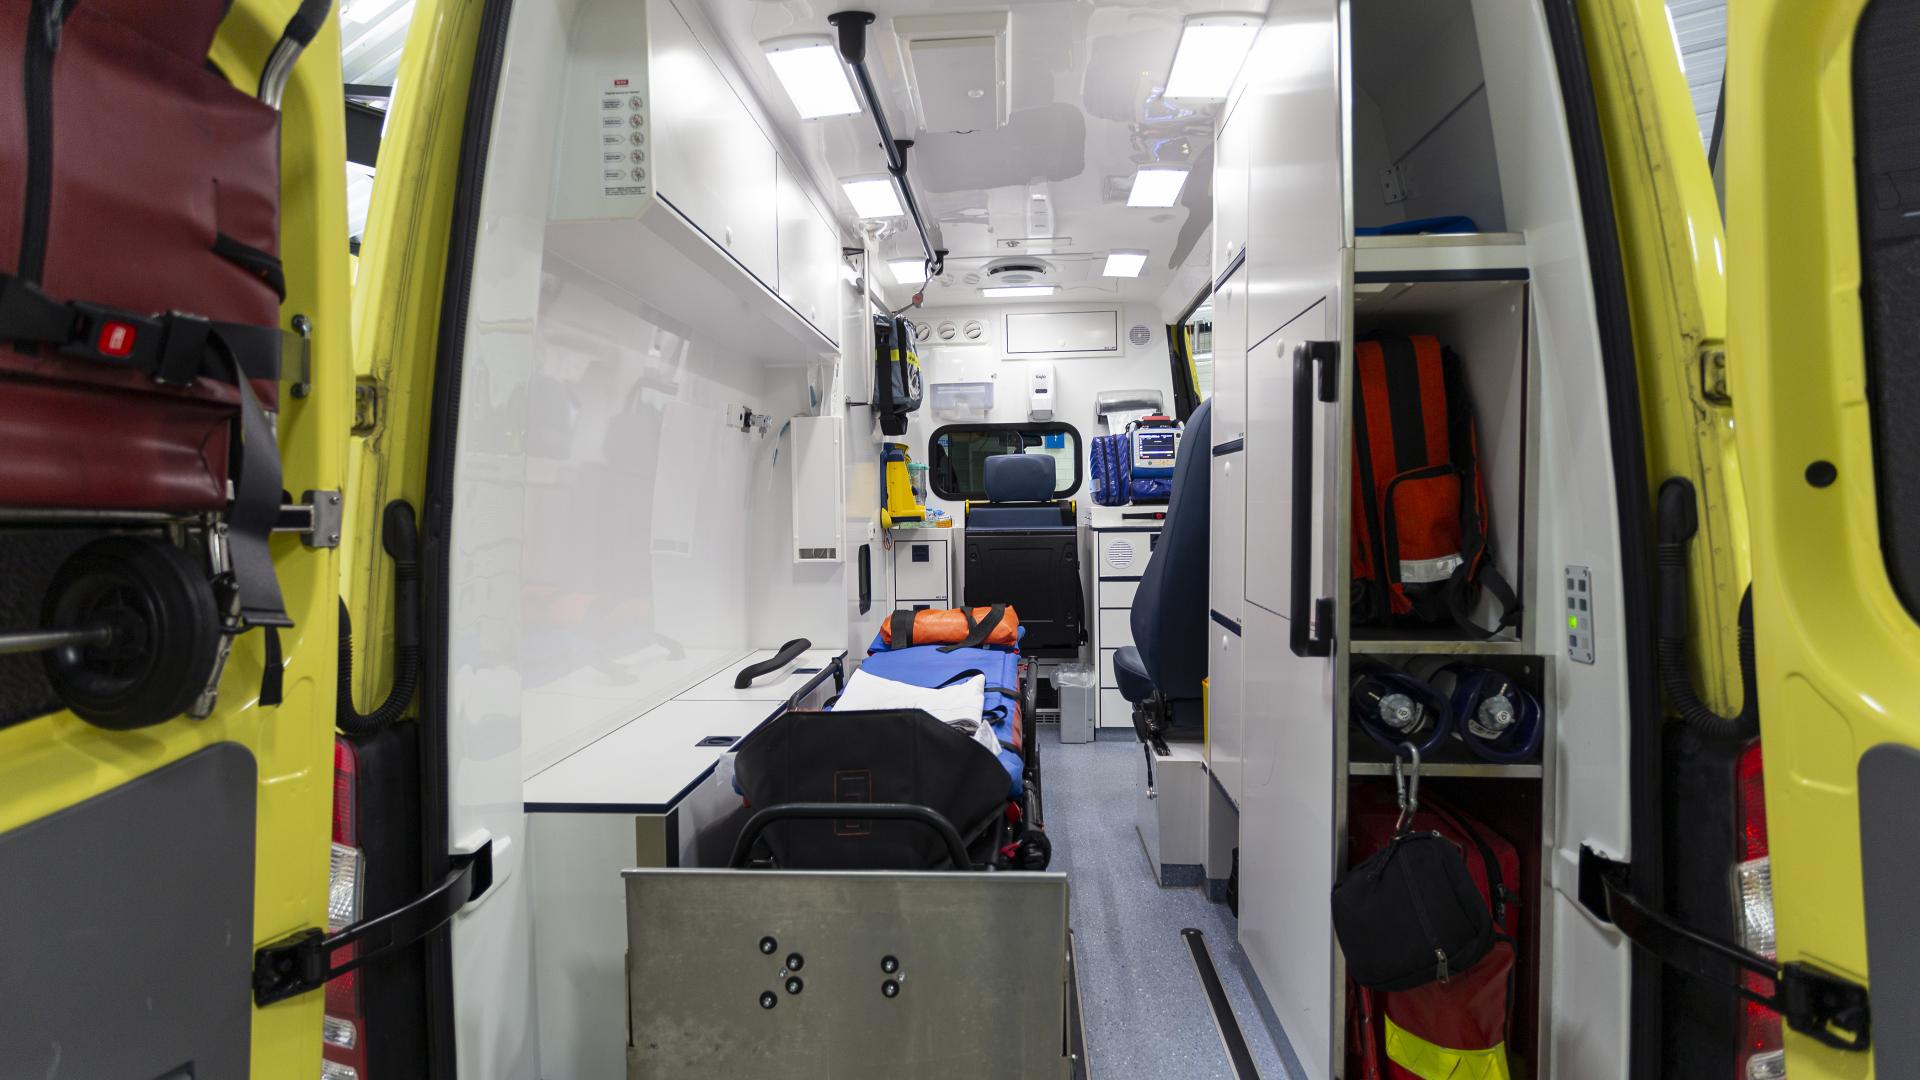 Kijkje in de ambulance